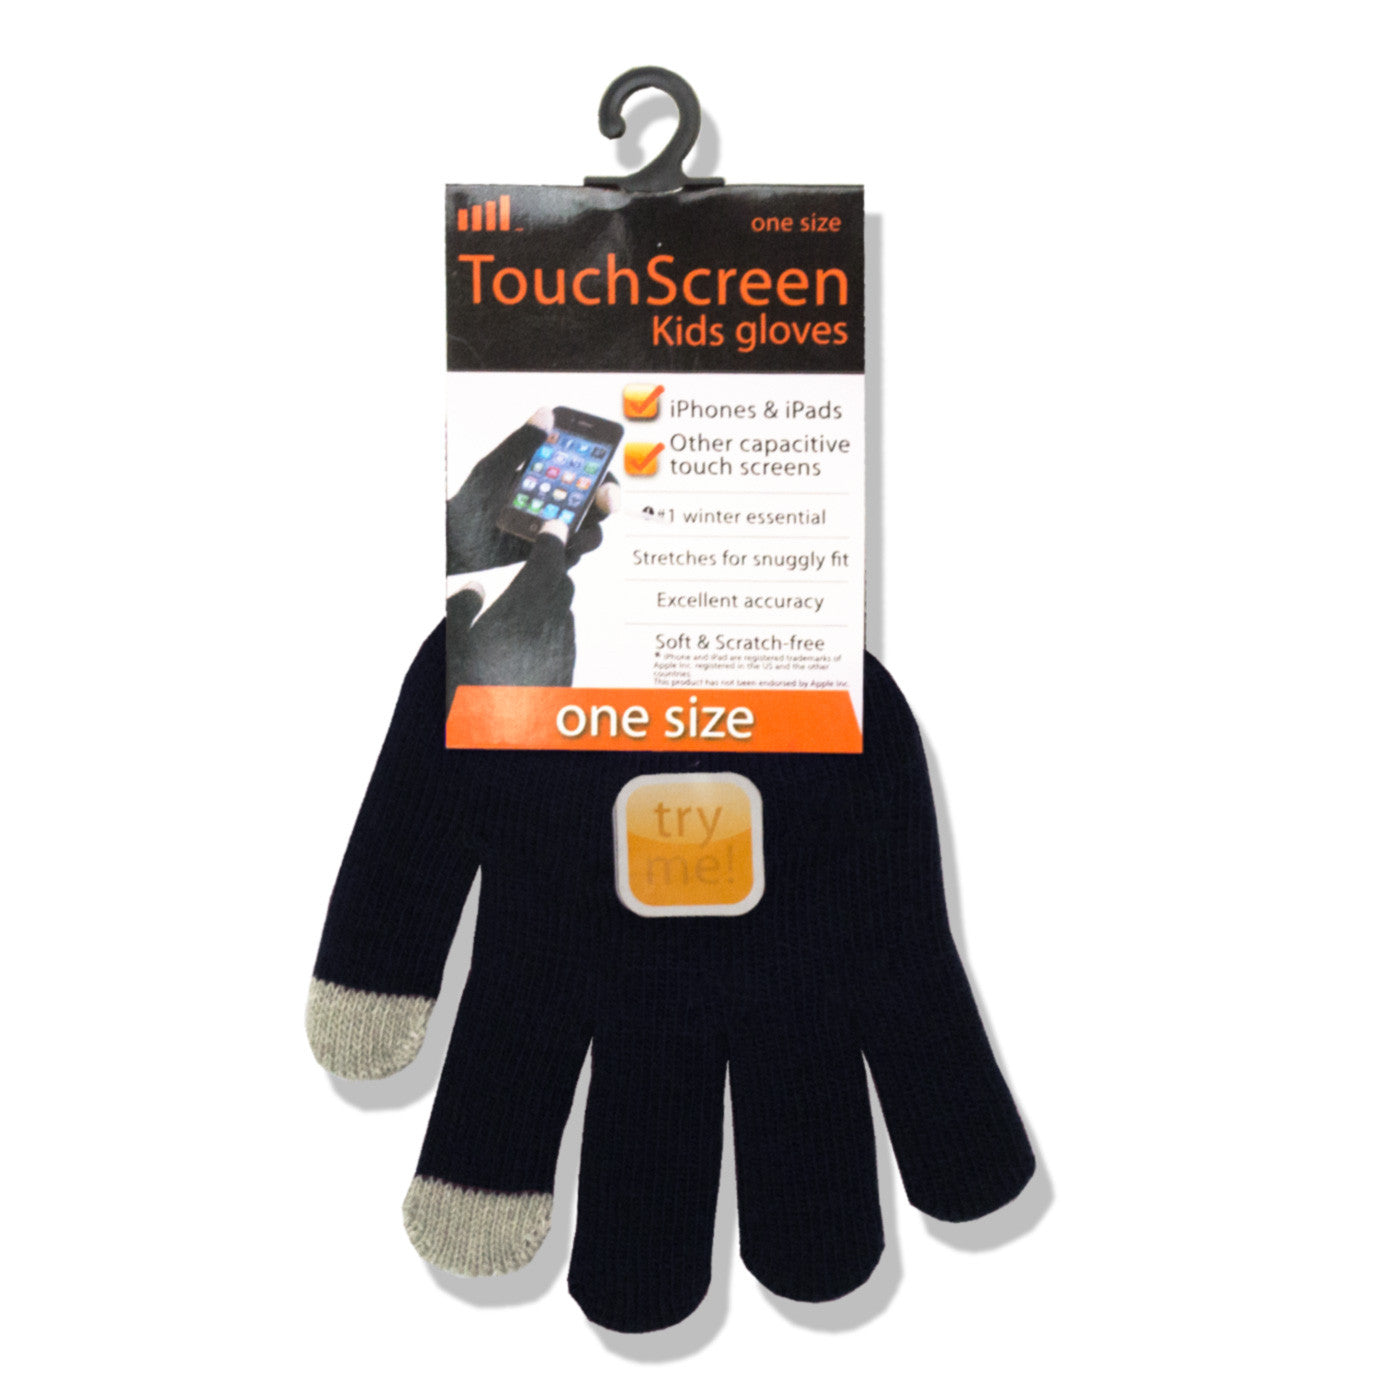 Touchscreen Gloves for Kids - Black